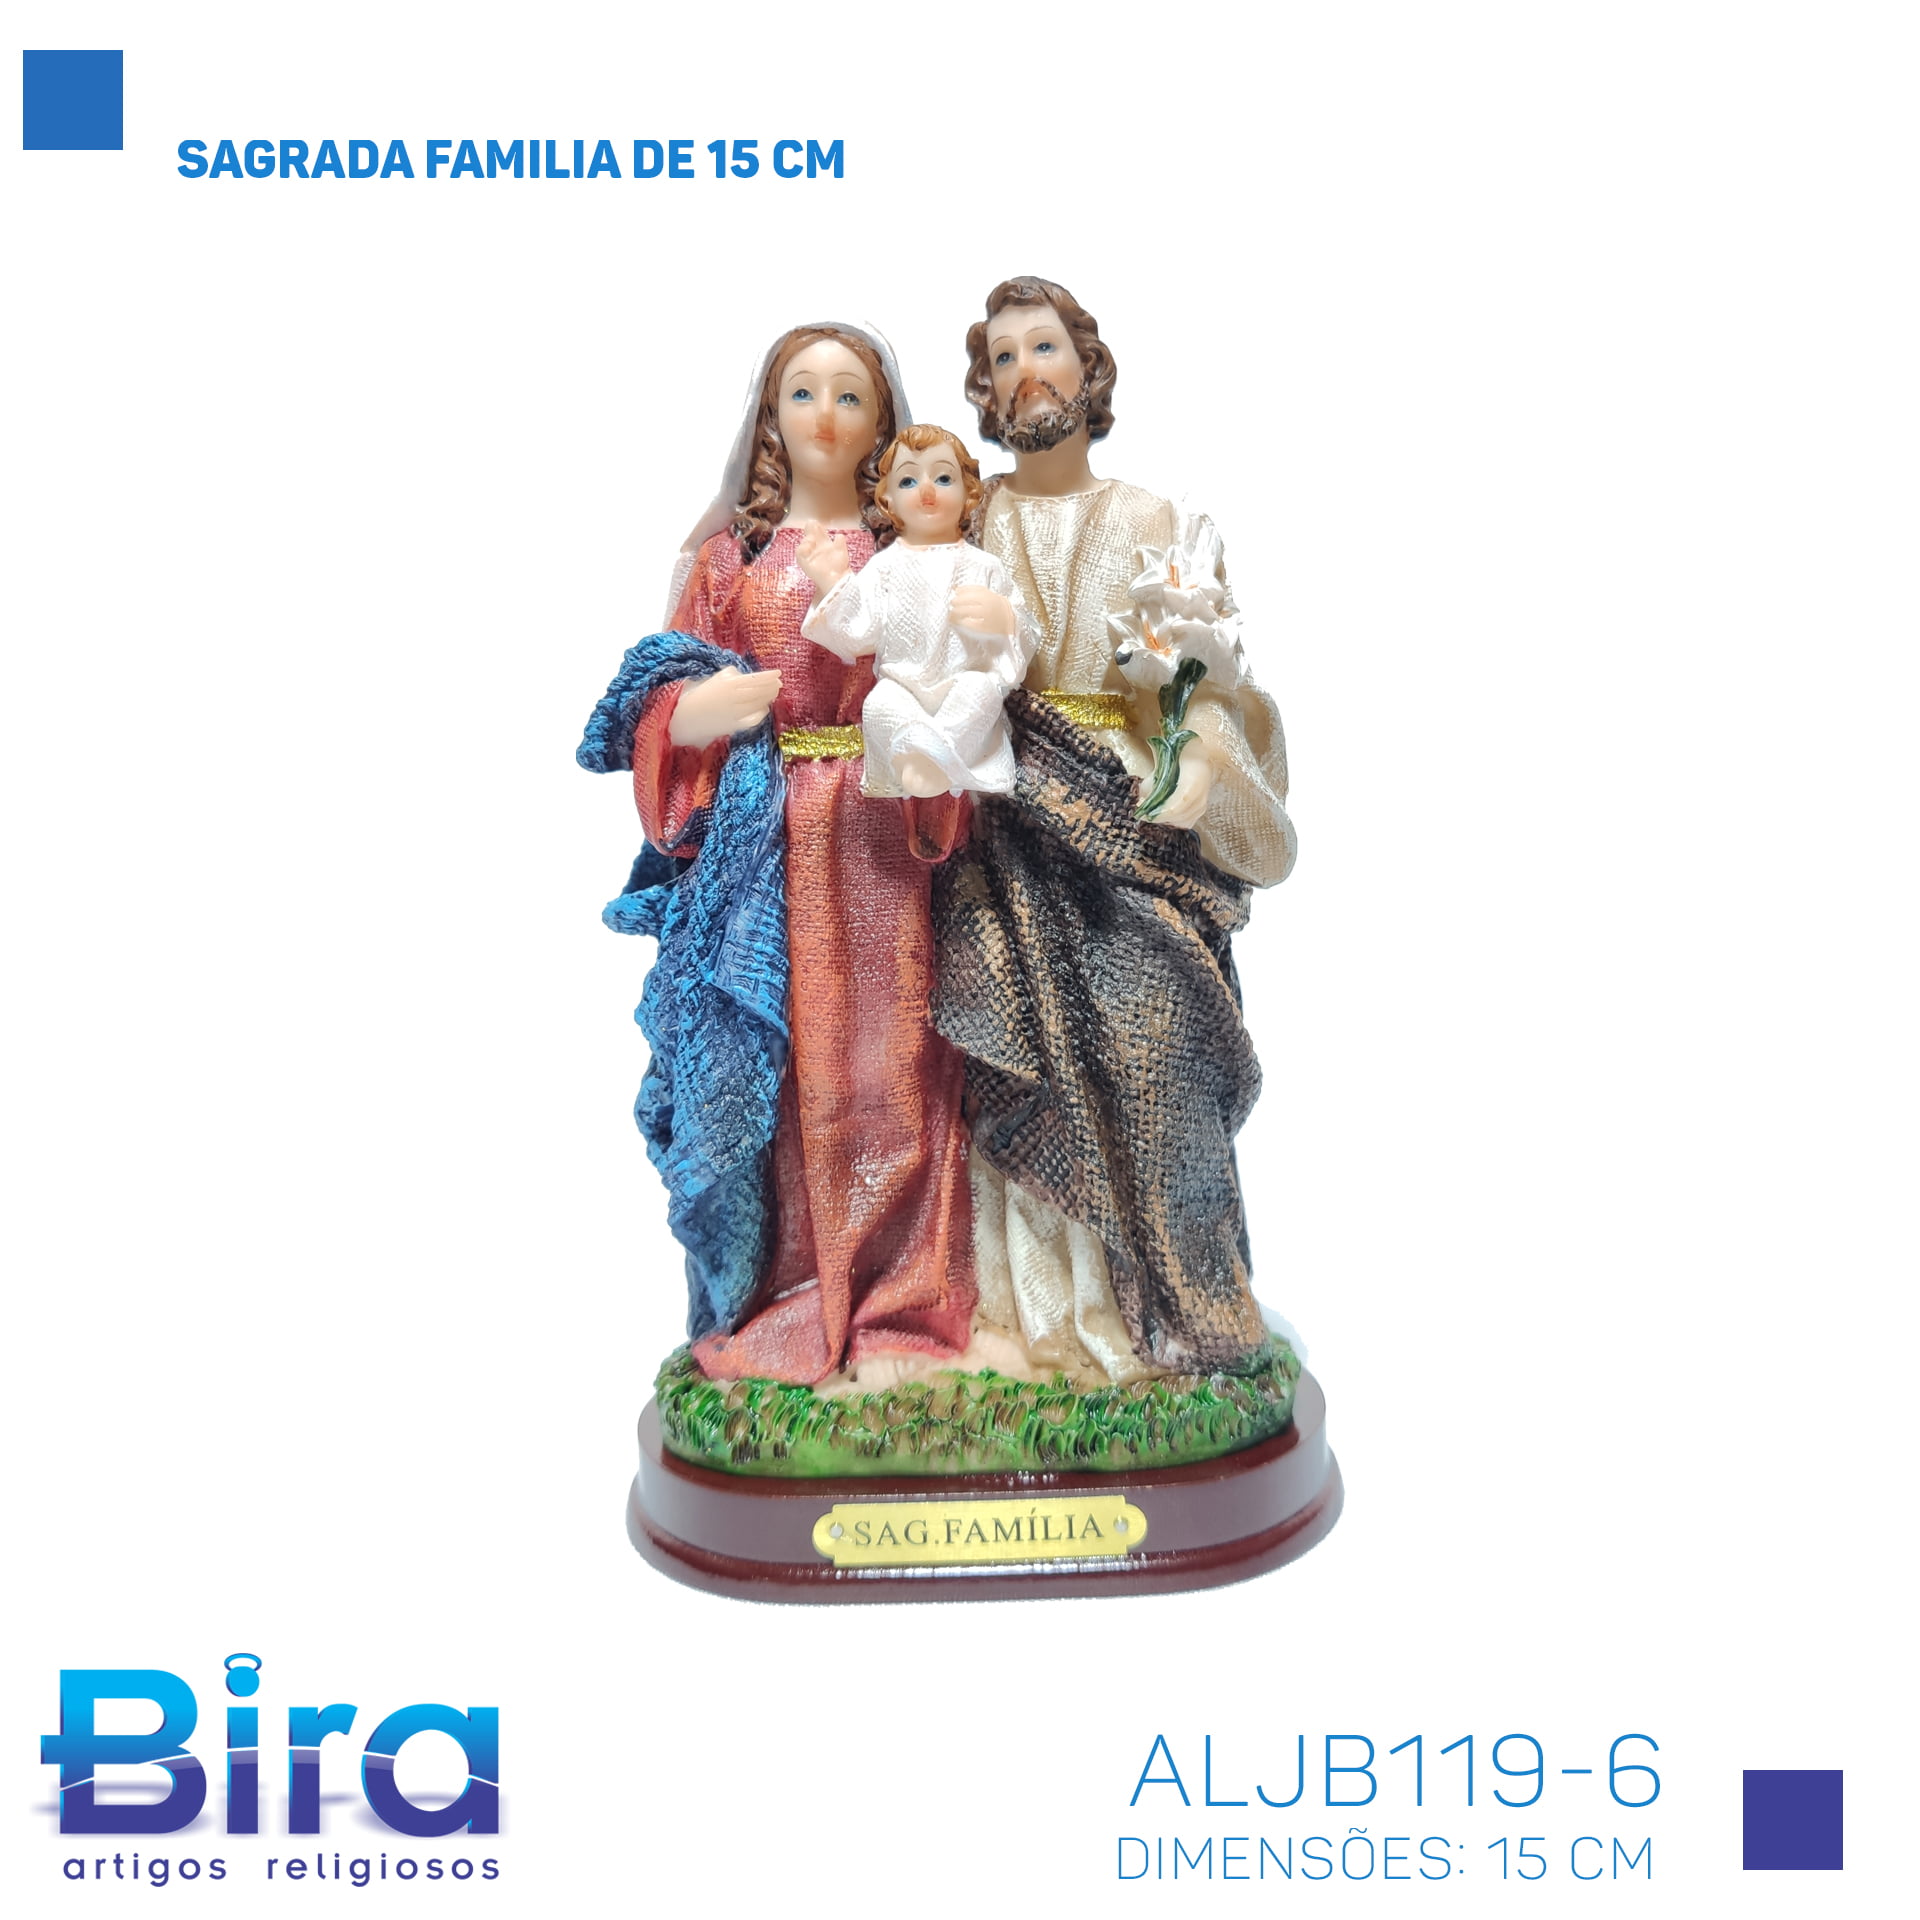 Bira Artigos Religiosos - SAGRADA FAMILIA DE 15 CM - Cod. ALJB119-6